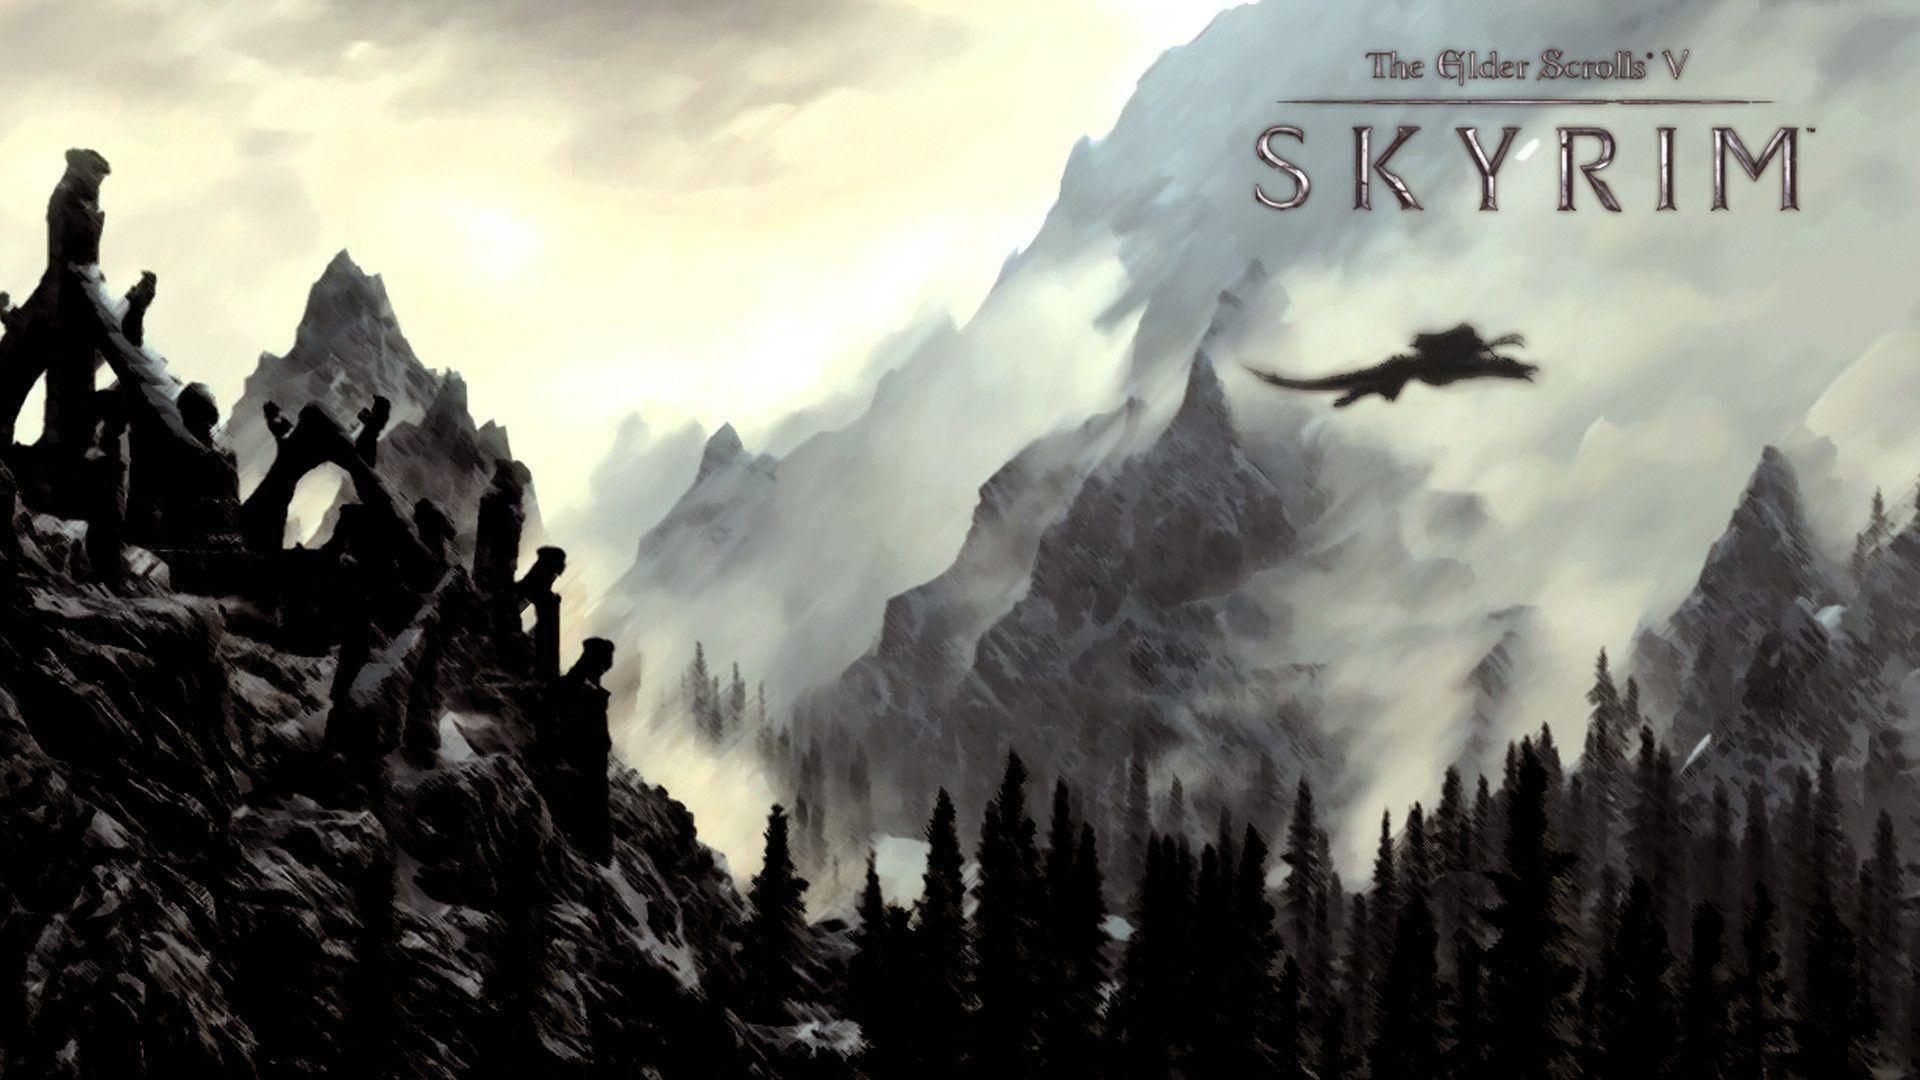 The Elder Scrolls V: Skyrim wallpapers